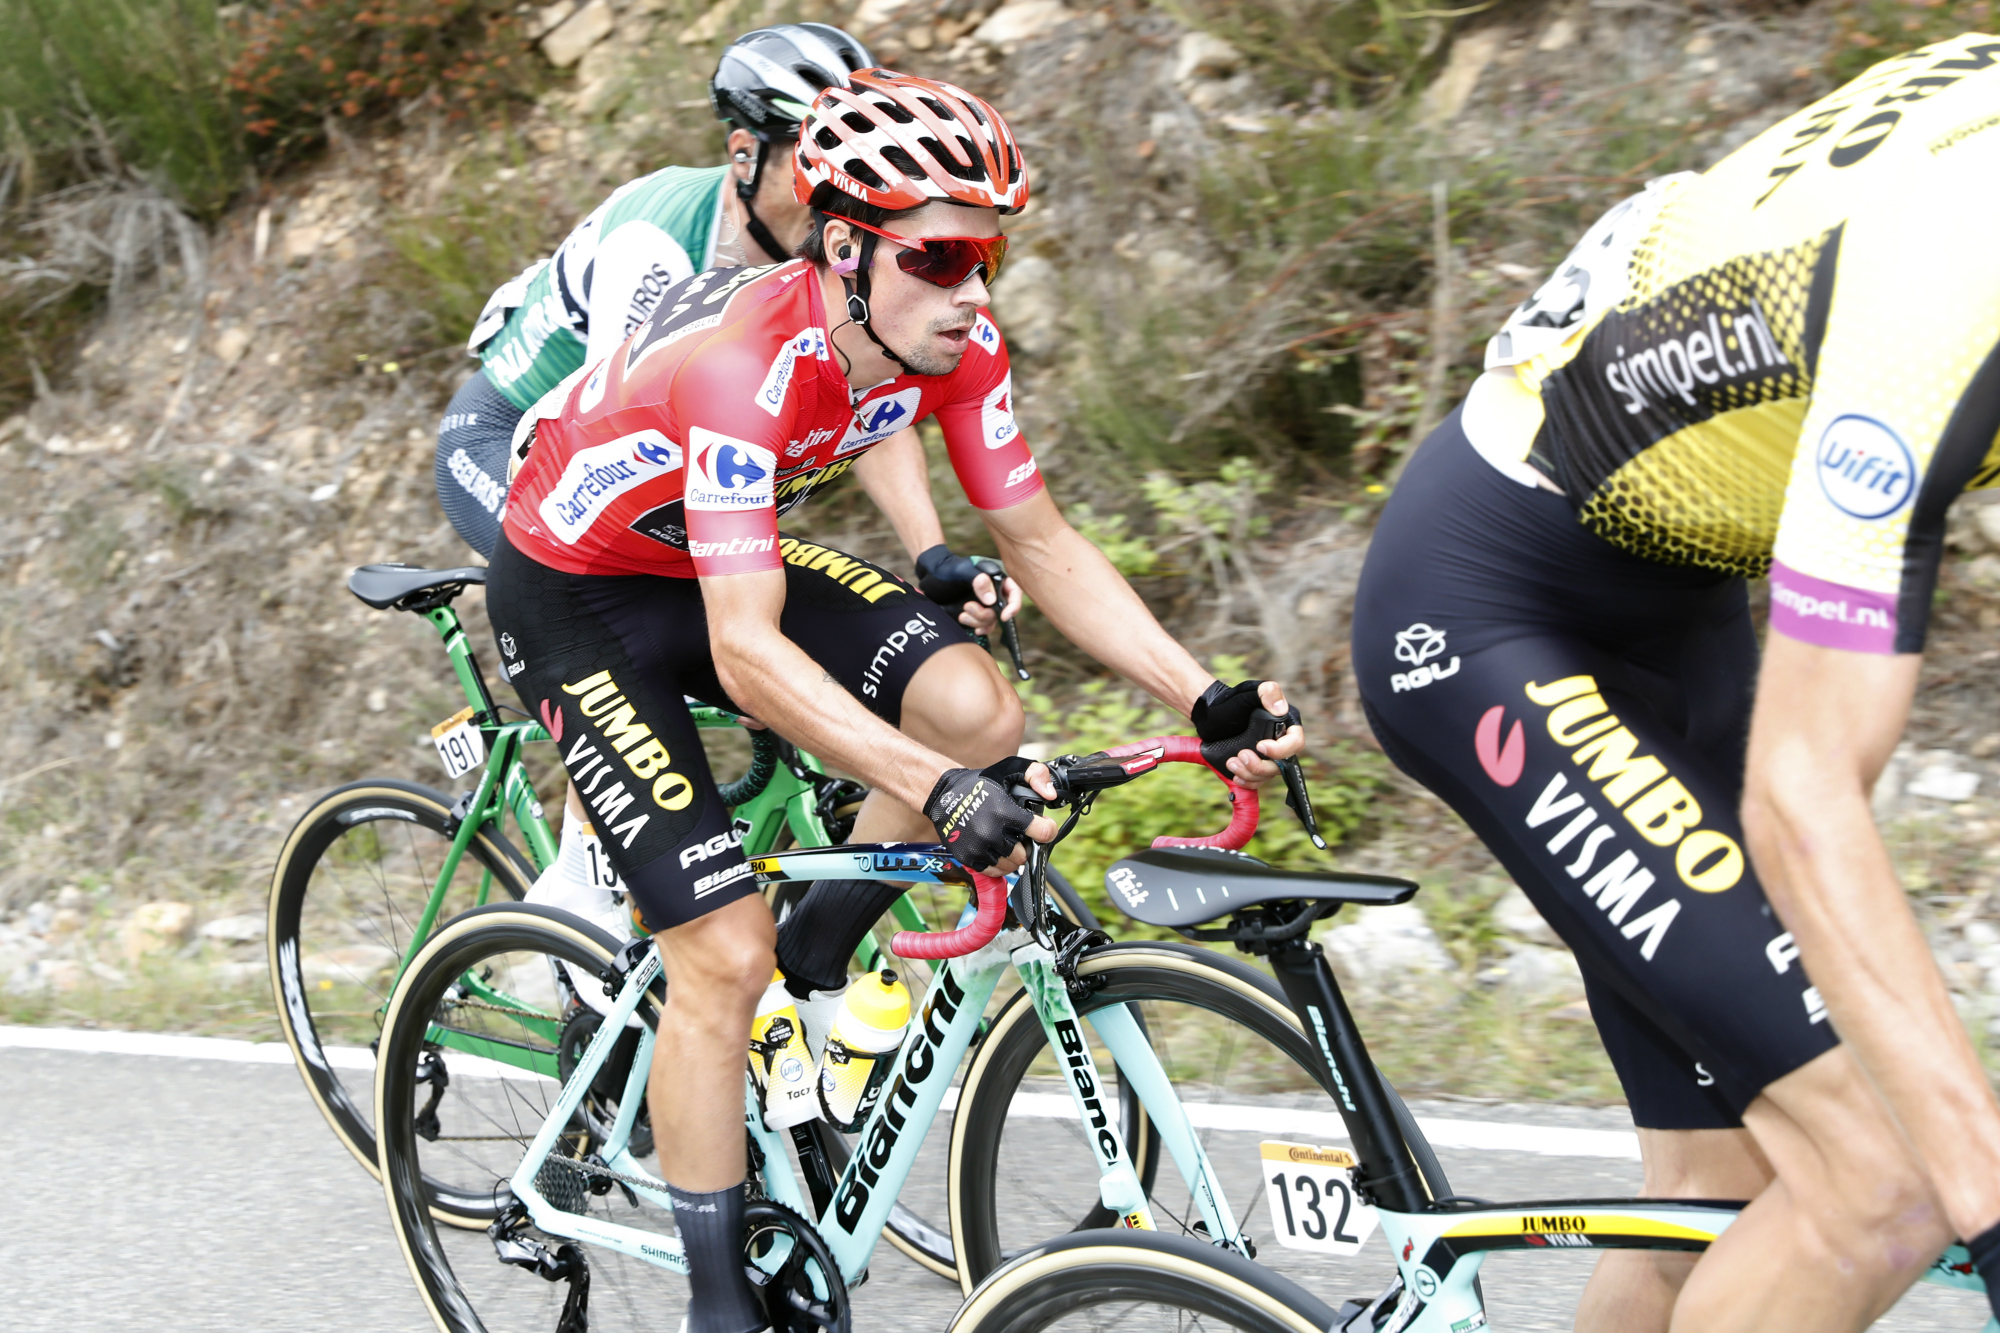 Vuelta a Espana 2019. Primoz Roglic: “popełniłem błąd”